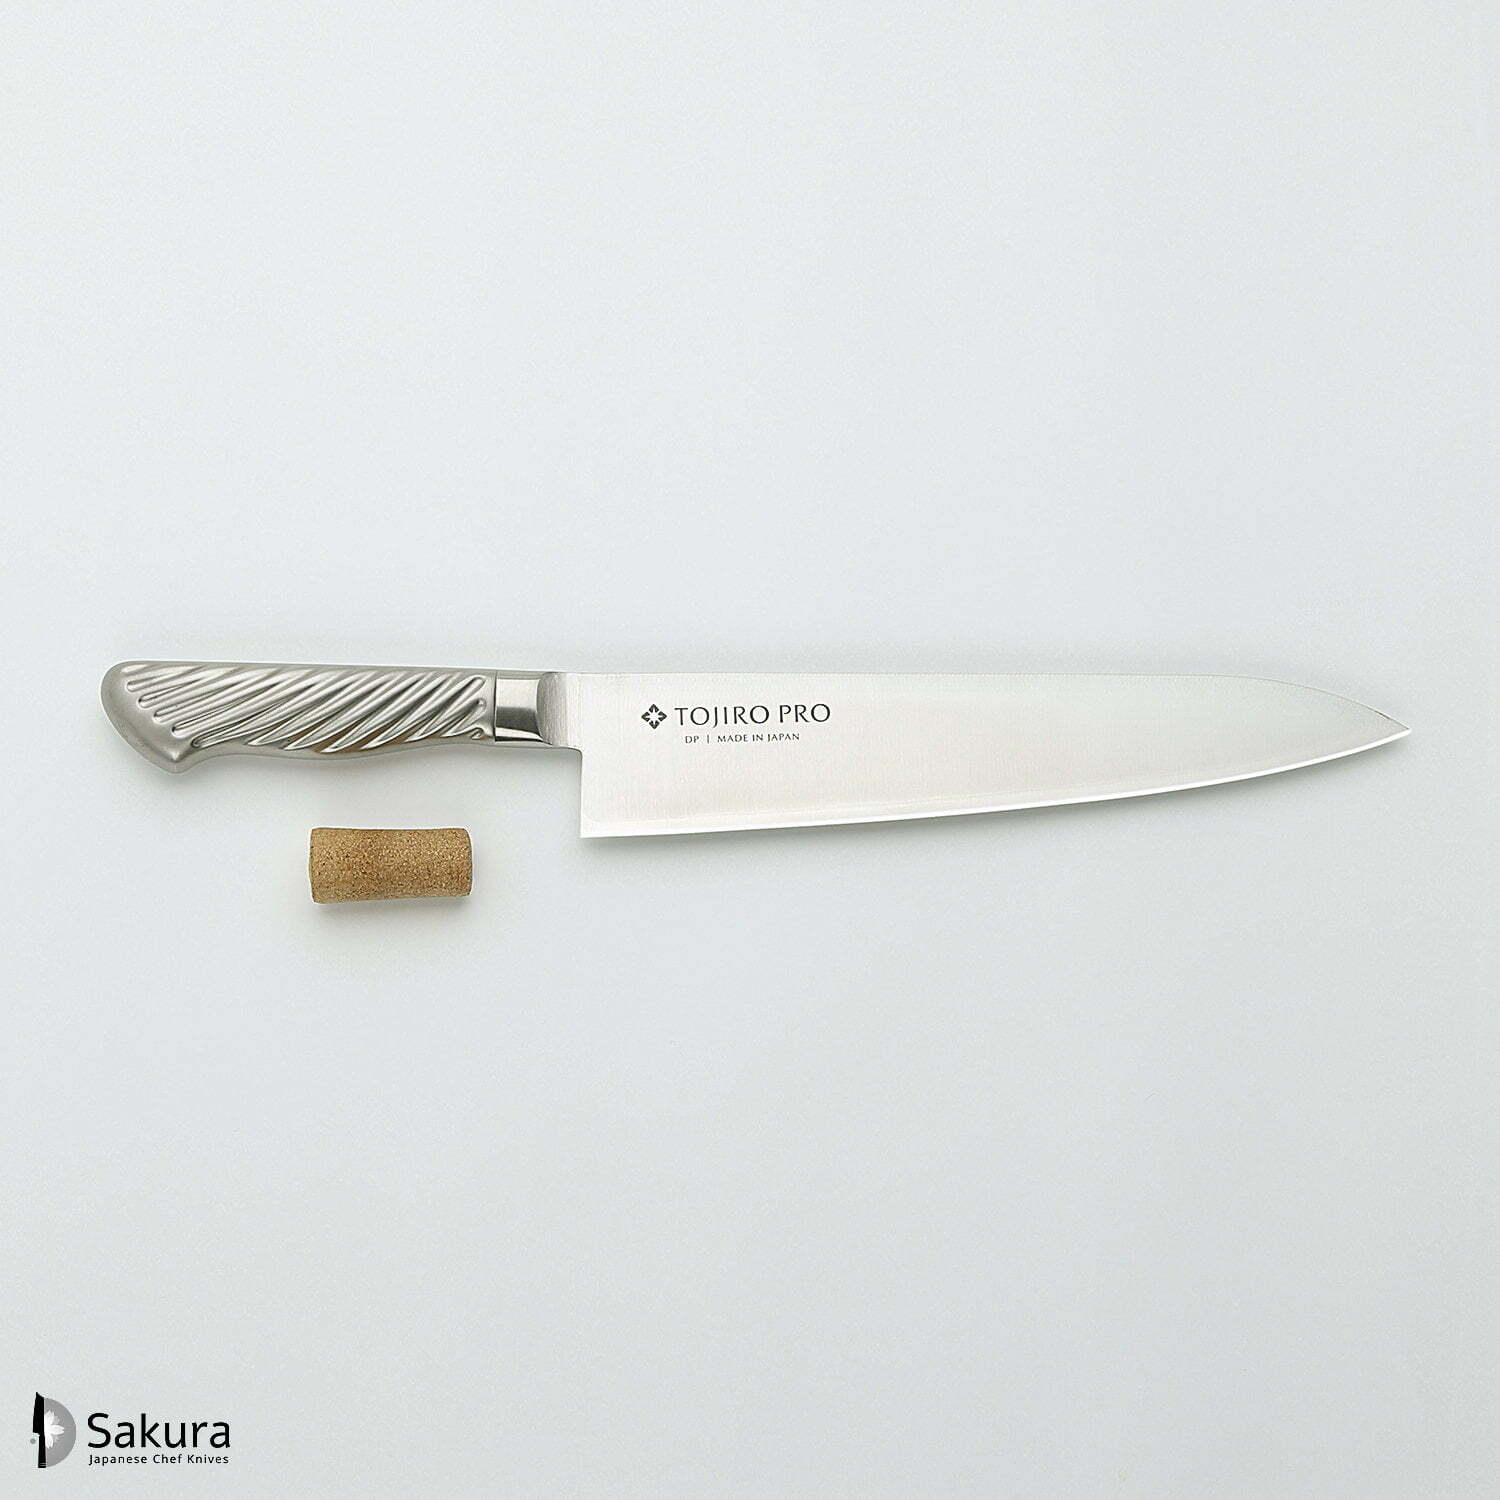 סכין שף רב-תכליתית גִּיוּטוֹ 240מ״מ מחוזקת 3 שכבות: פלדת פחמן יפנית VG-10 עטופה פלדת אל-חלד גימור מט מלוטש טוג׳ירו יפן